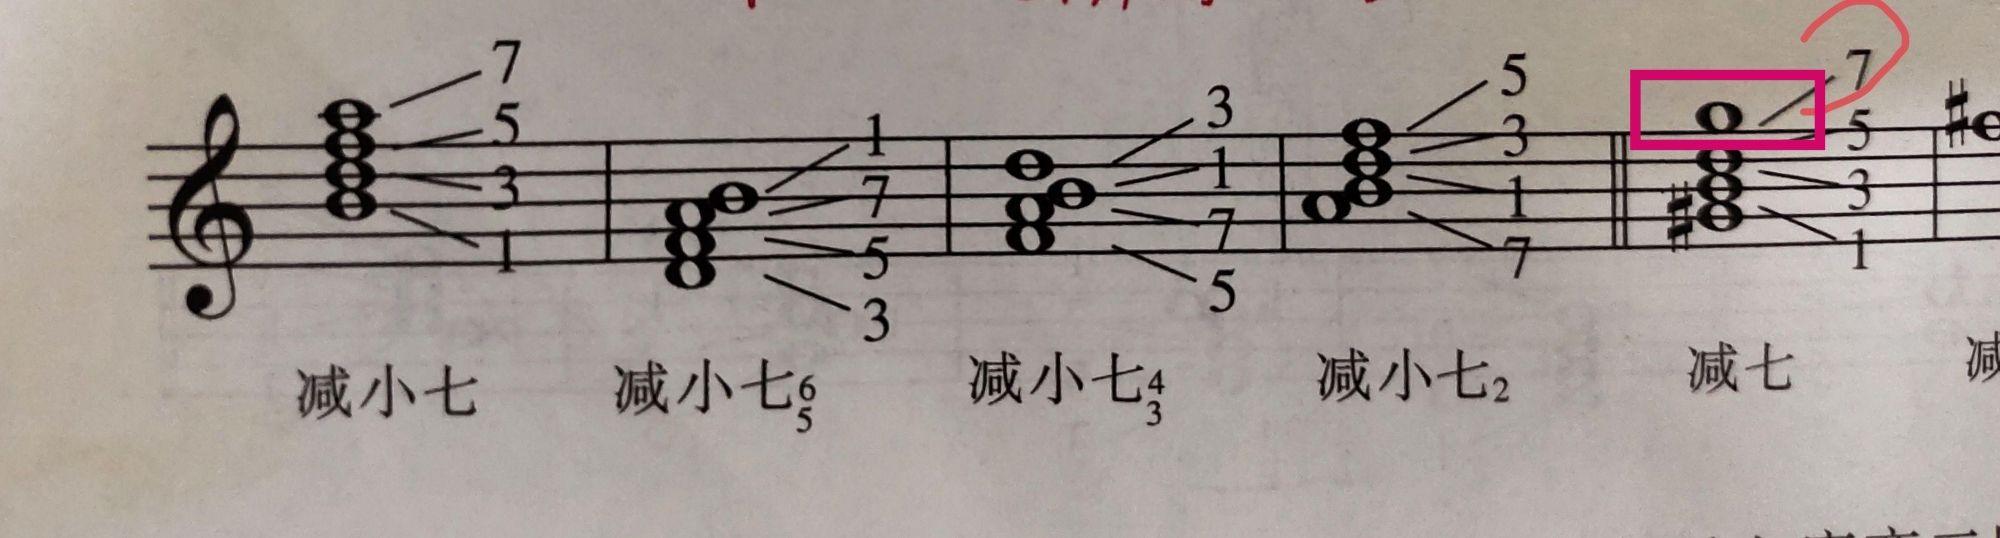 虚心请教减七和弦的7是不是画错位置了